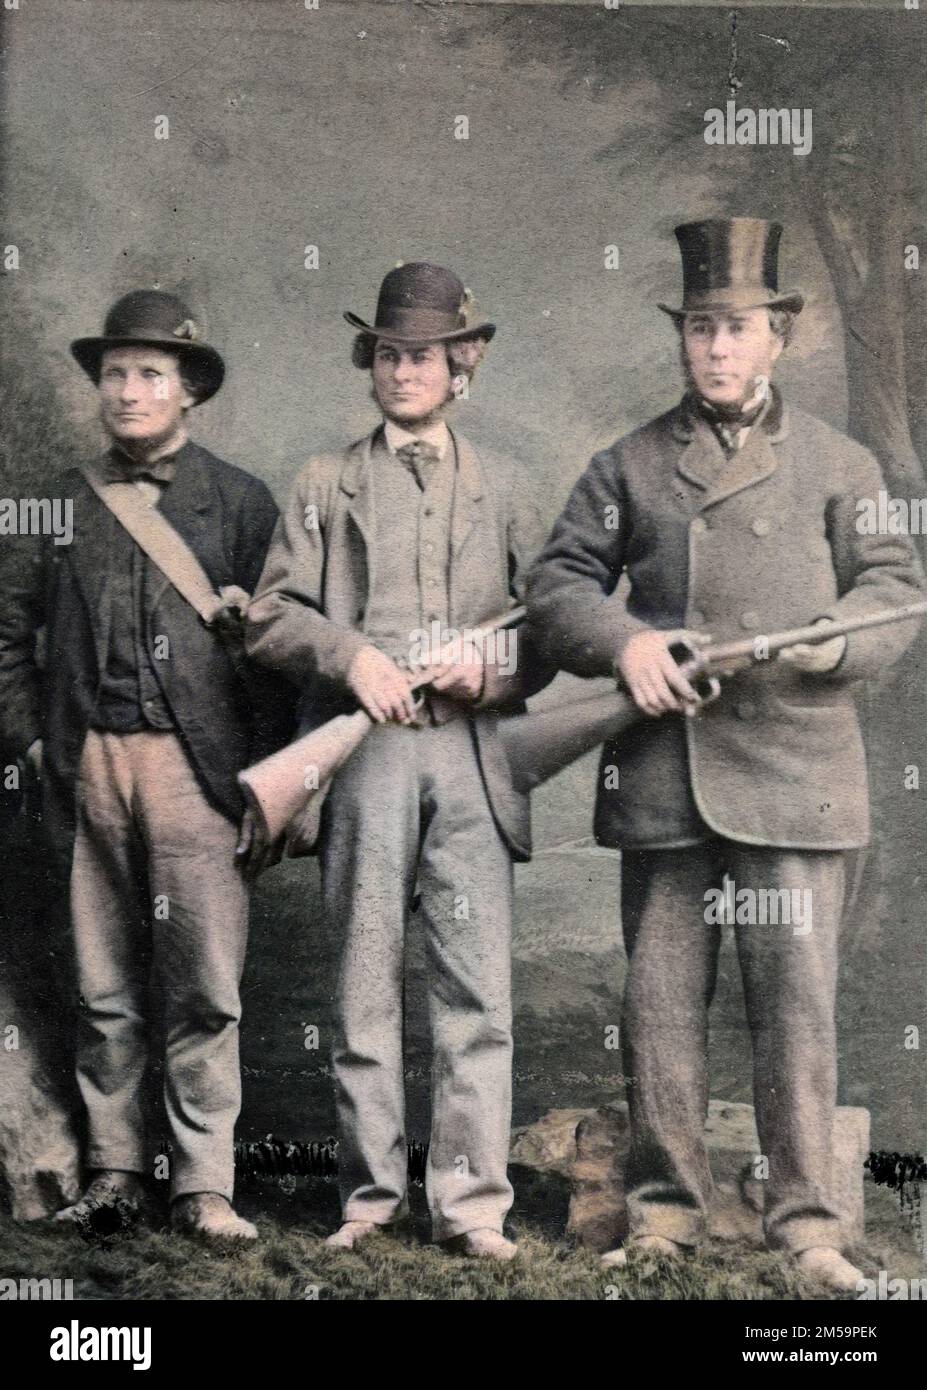 Vintage-Farbfoto, drei Männer mit Schrotflinten, Jagd, Jäger, Bowler und Hut, englischer c. 1870er, viktorianischer Sport des 19. Jahrhunderts Stockfoto